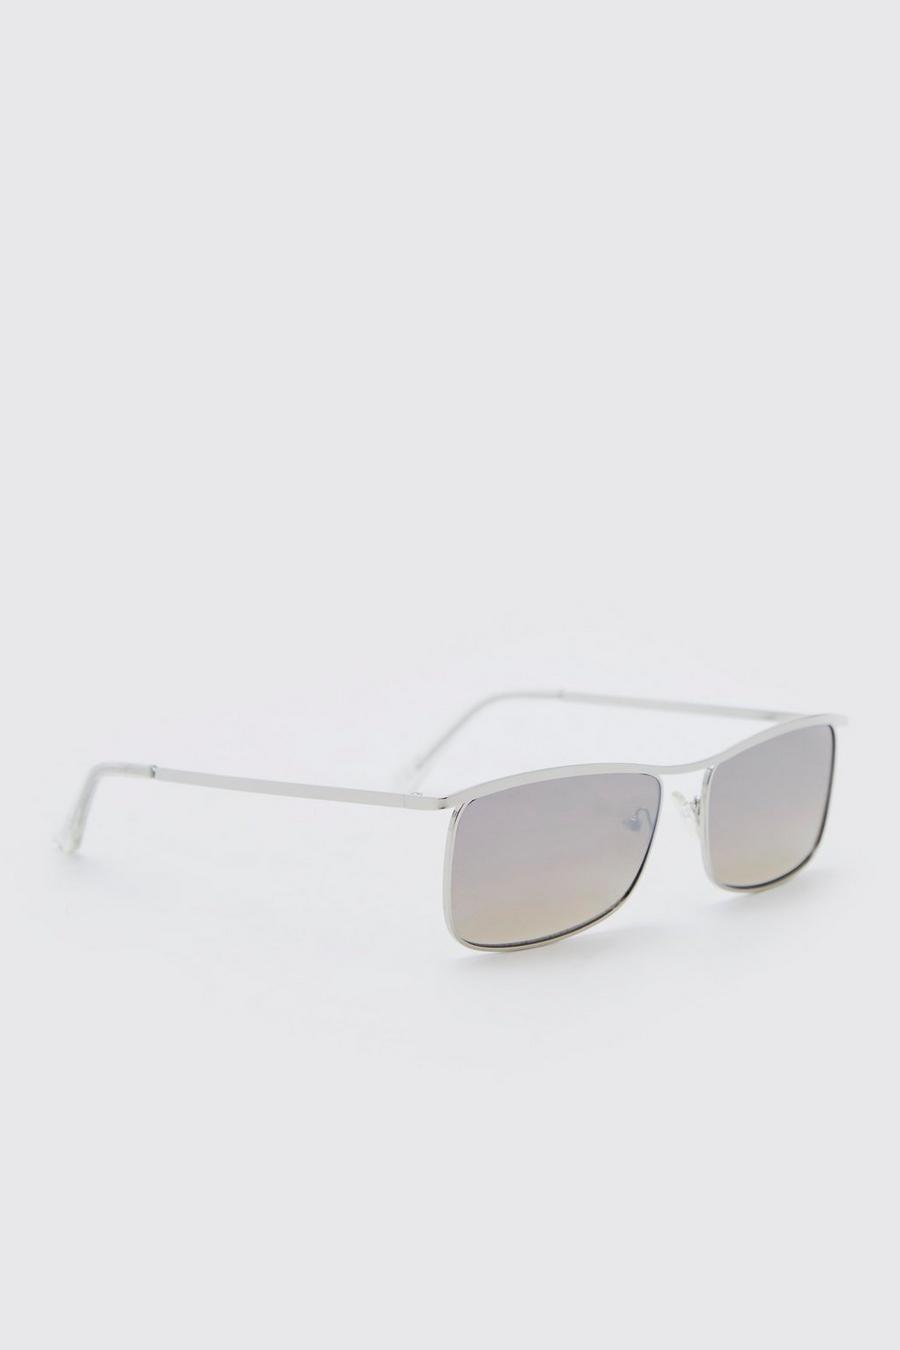 Gafas de sol recicladas rectangulares con lentes reflectantes, Silver